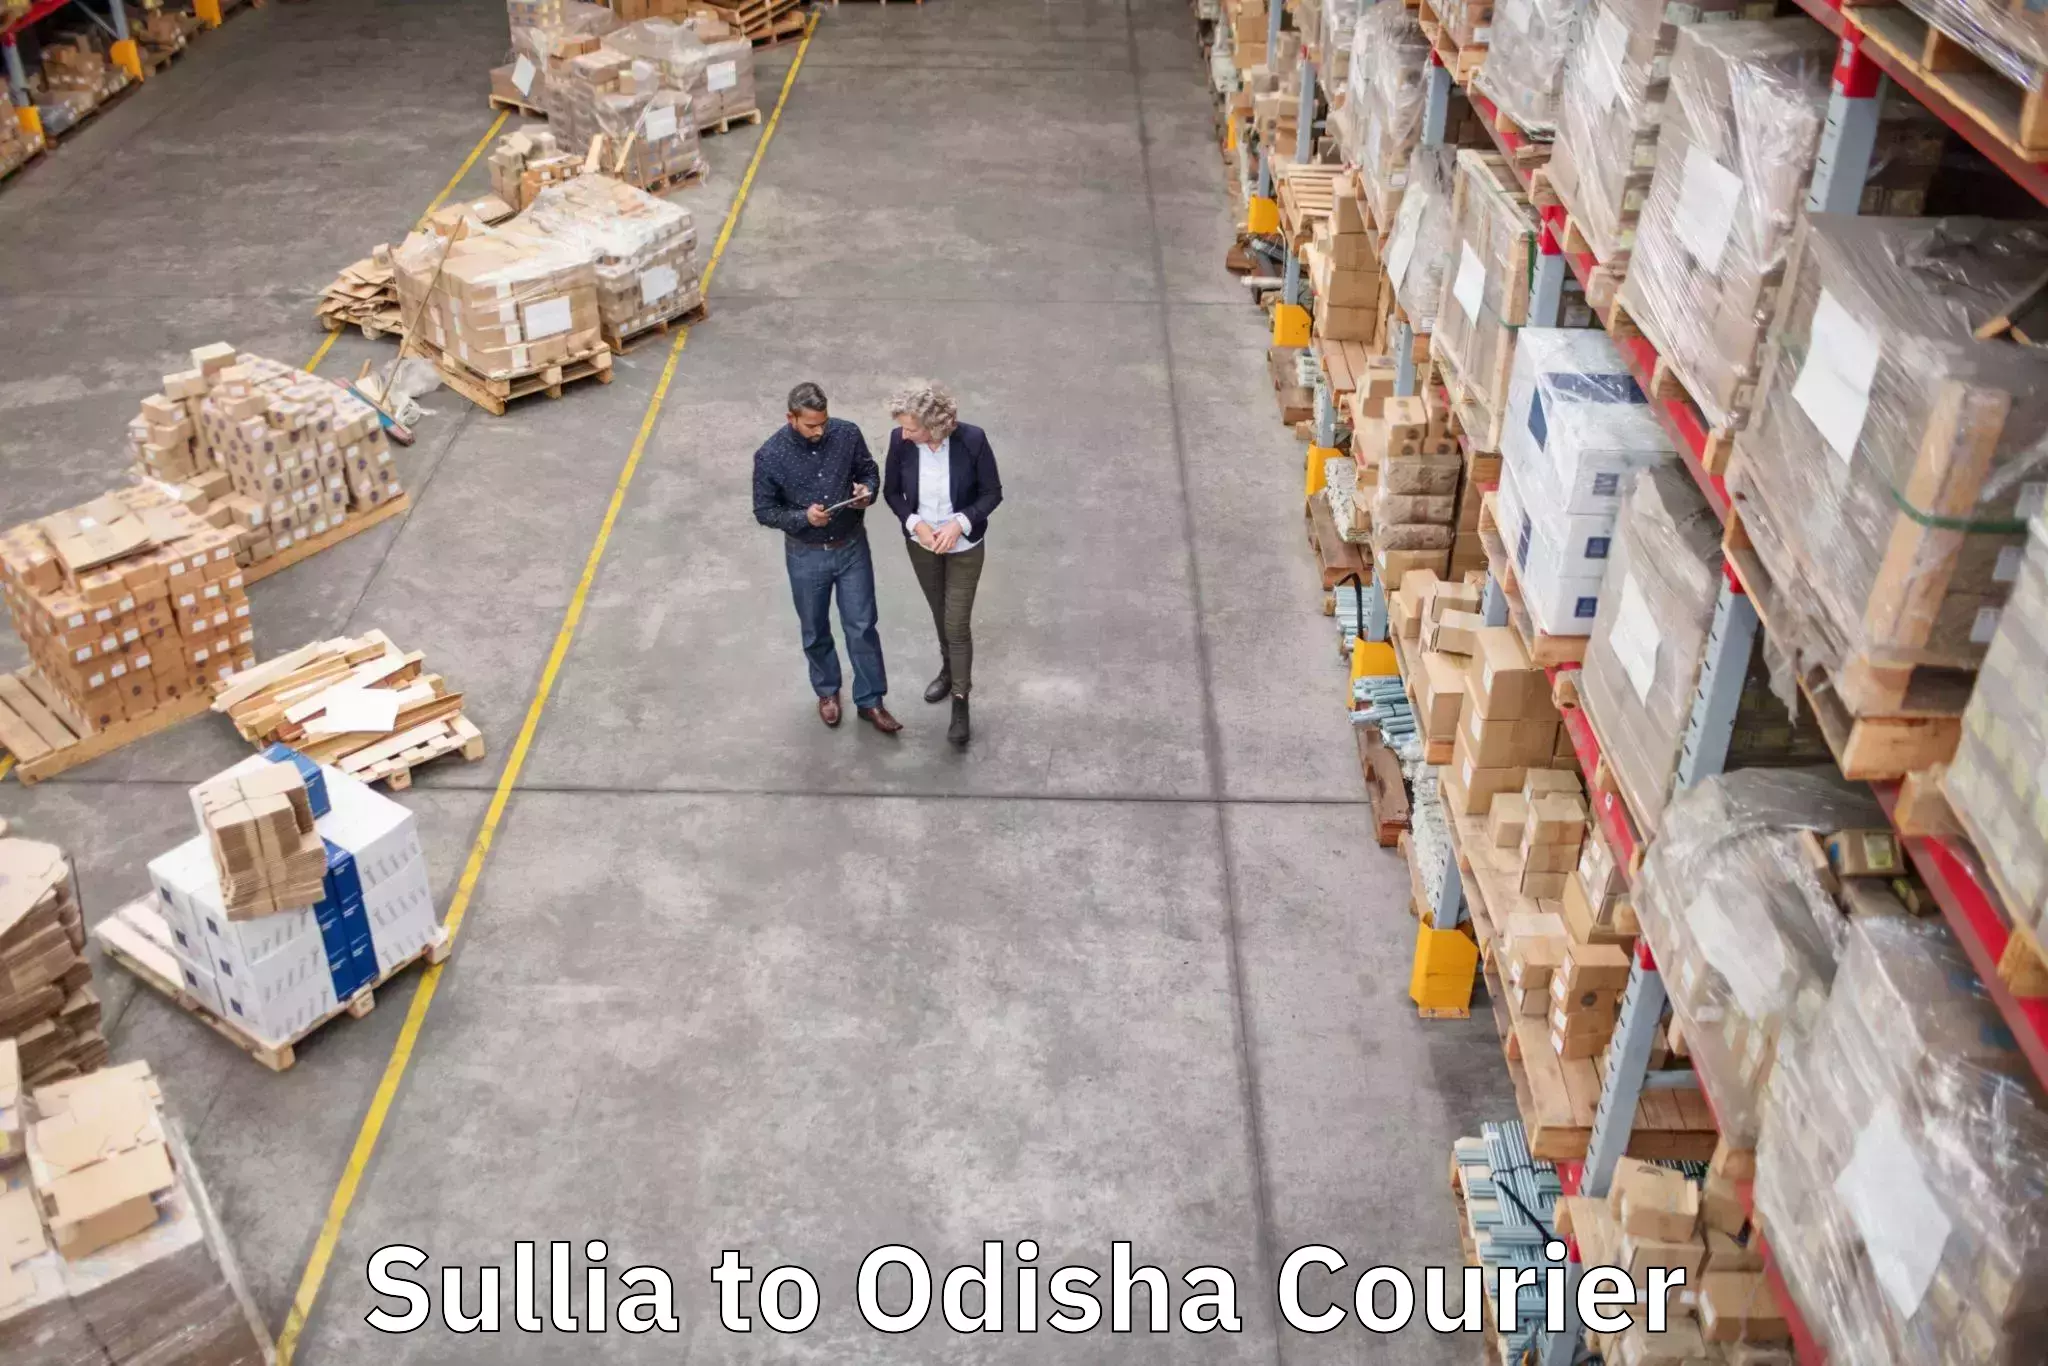 Luggage transfer service Sullia to Odisha